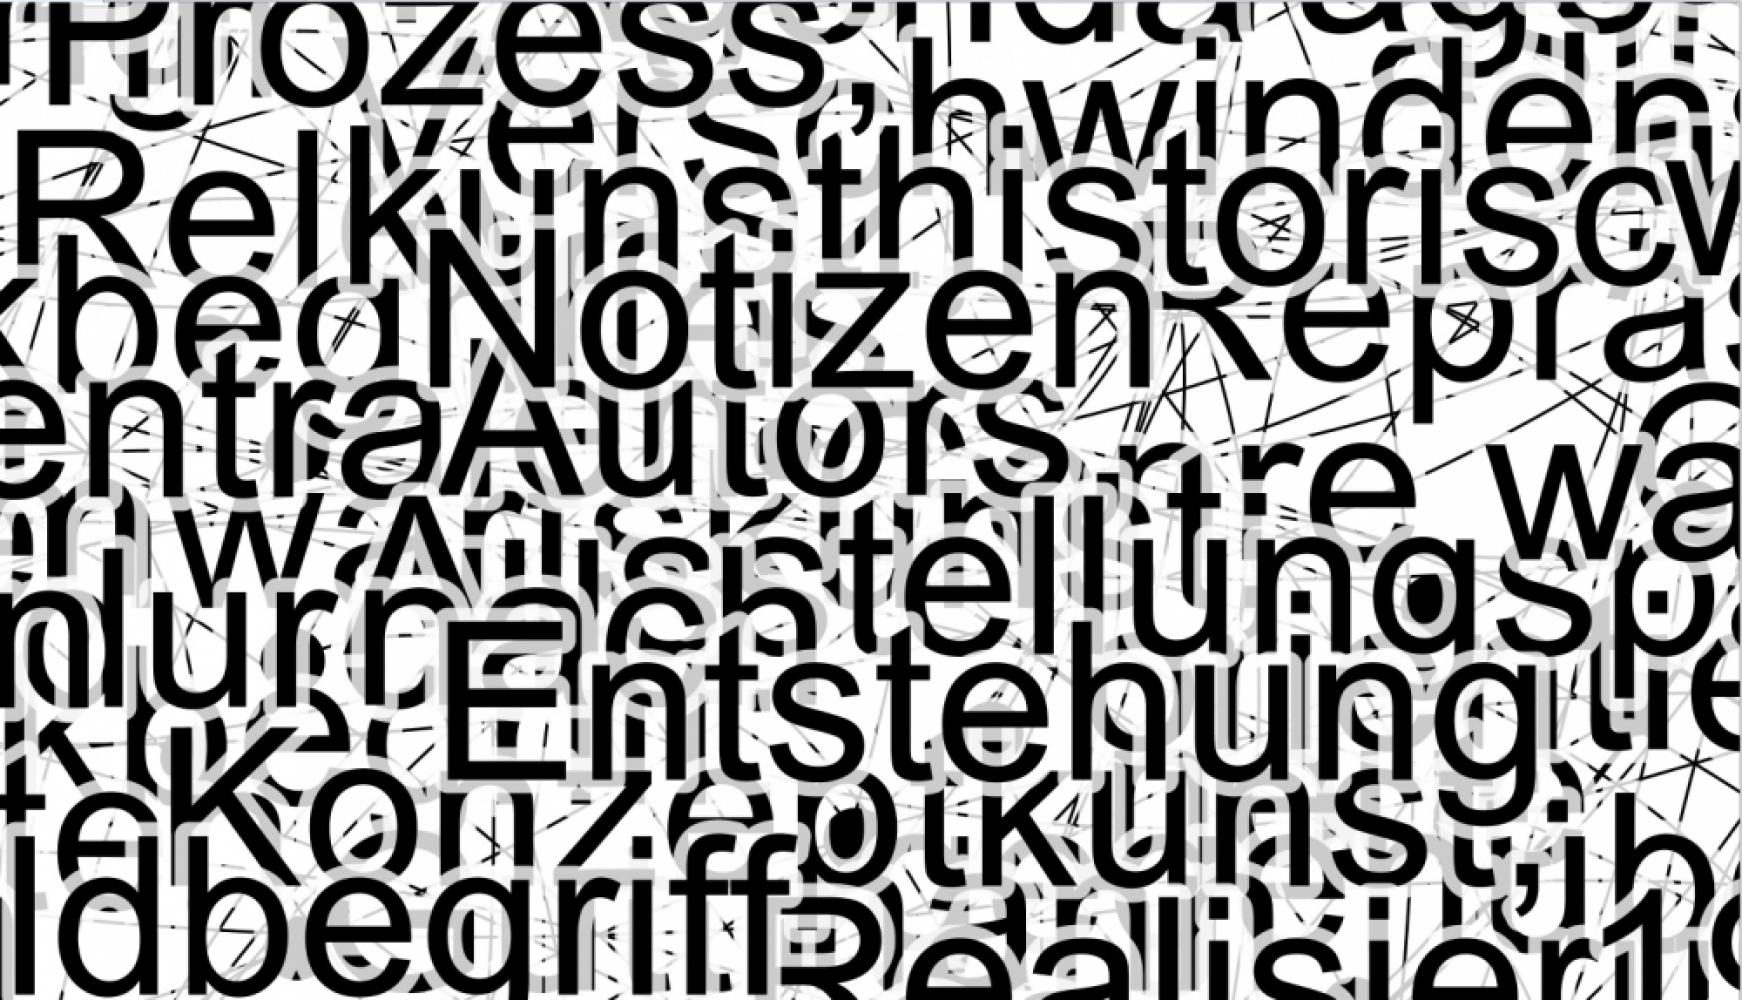 Wortwolke aus den 10.000 Wörtern in Texten zur zeitgenössischen Kunst